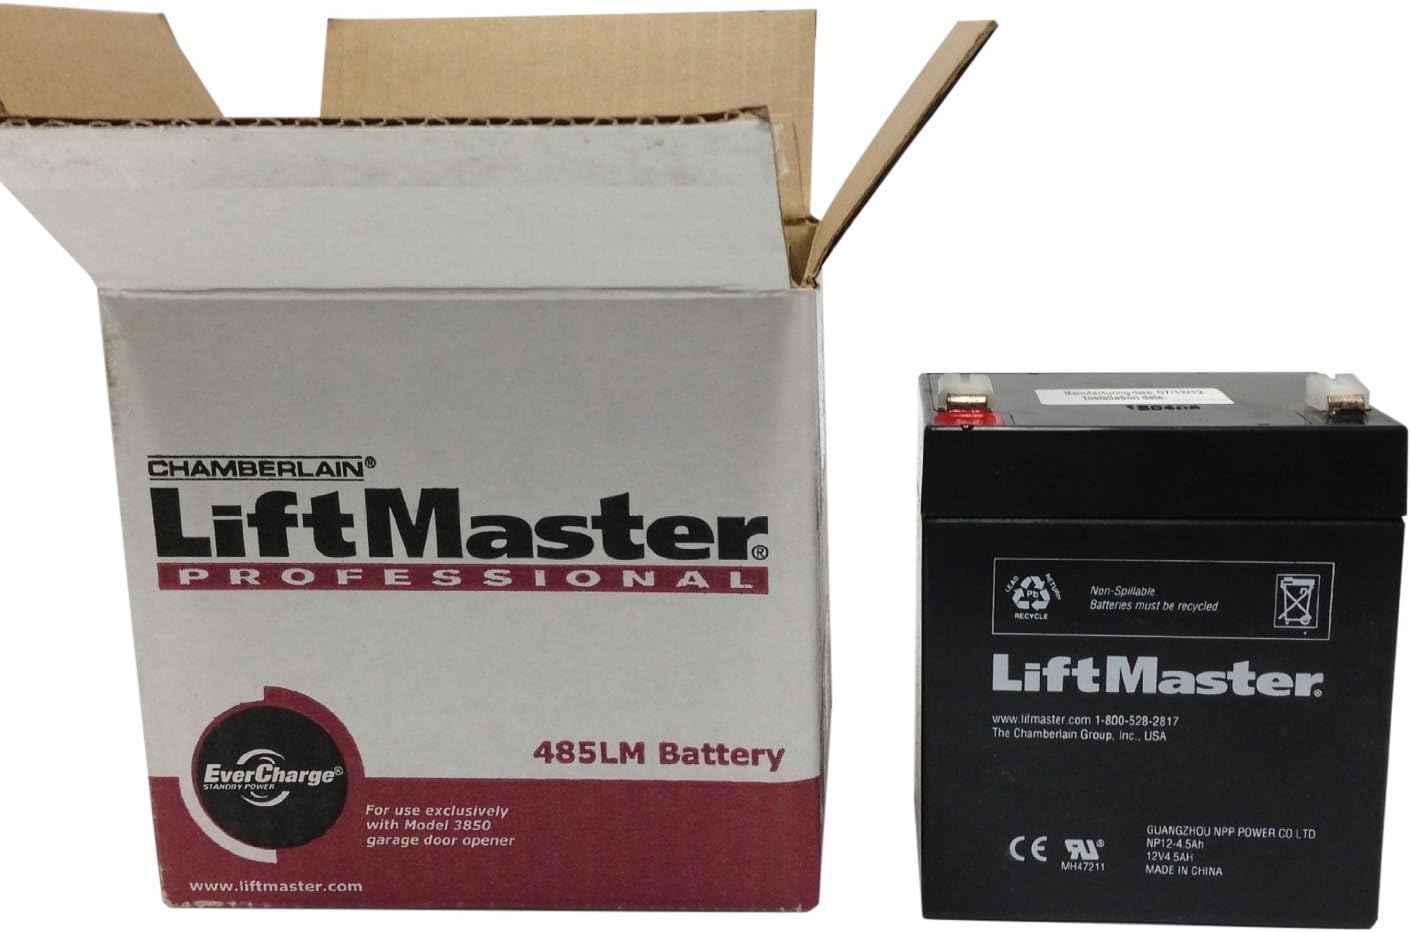 How To Change The Battery In A Liftmaster Garage Door Opener